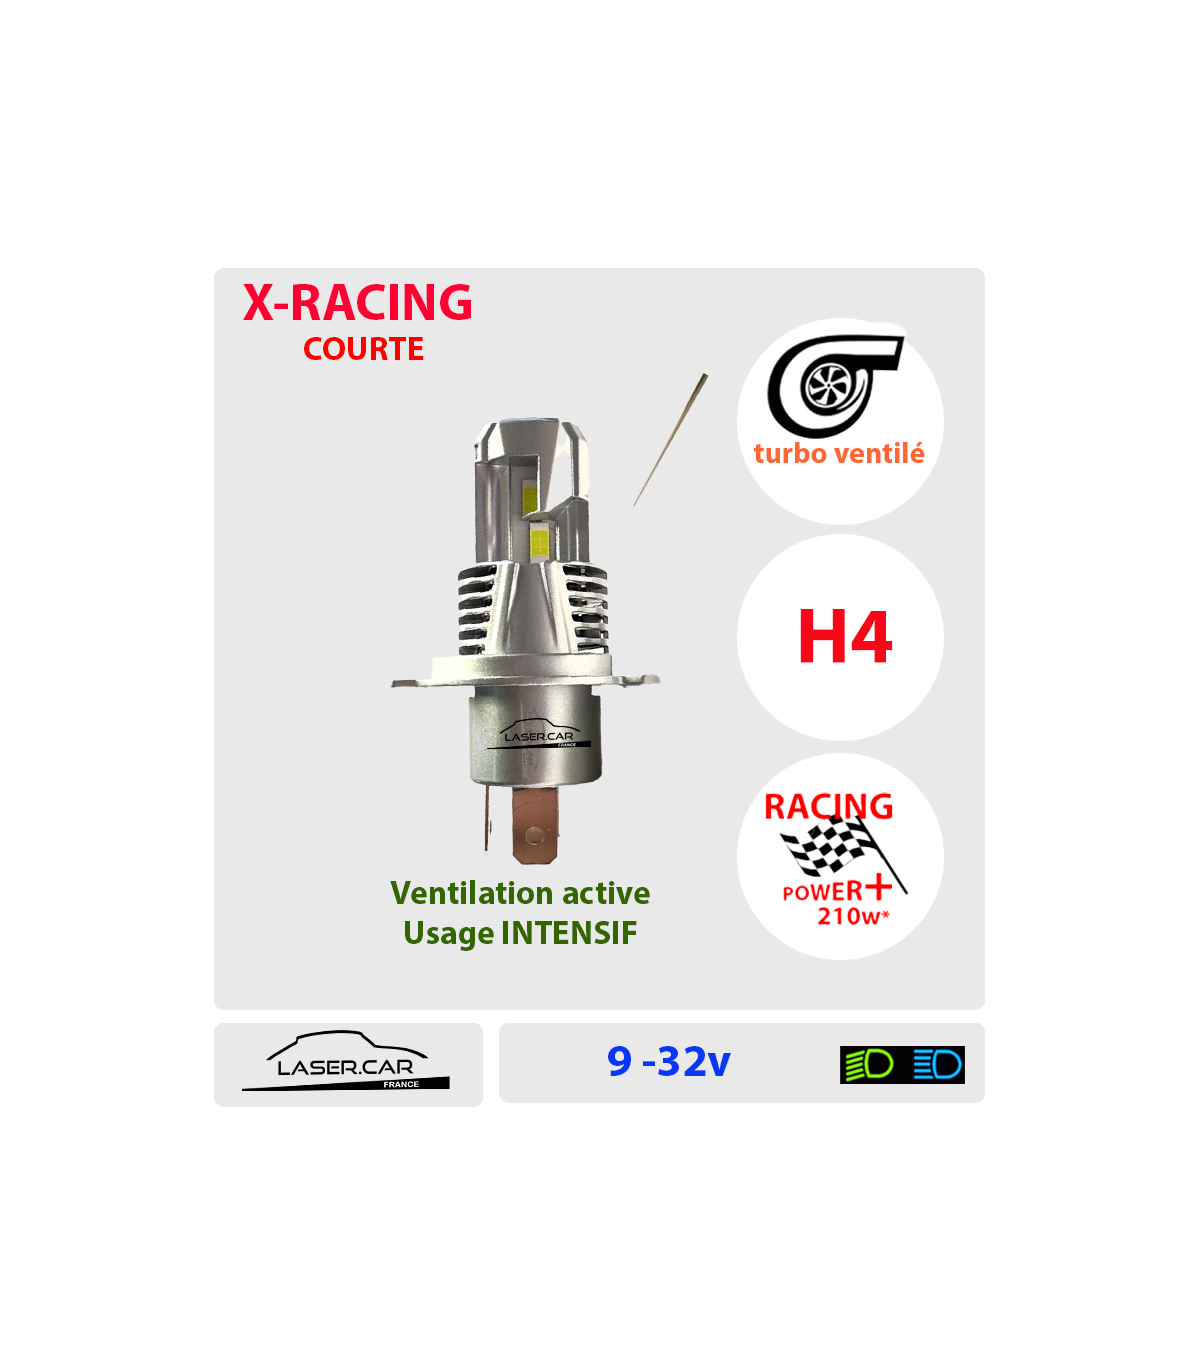 H4 LED, 210w* Série X-RACING